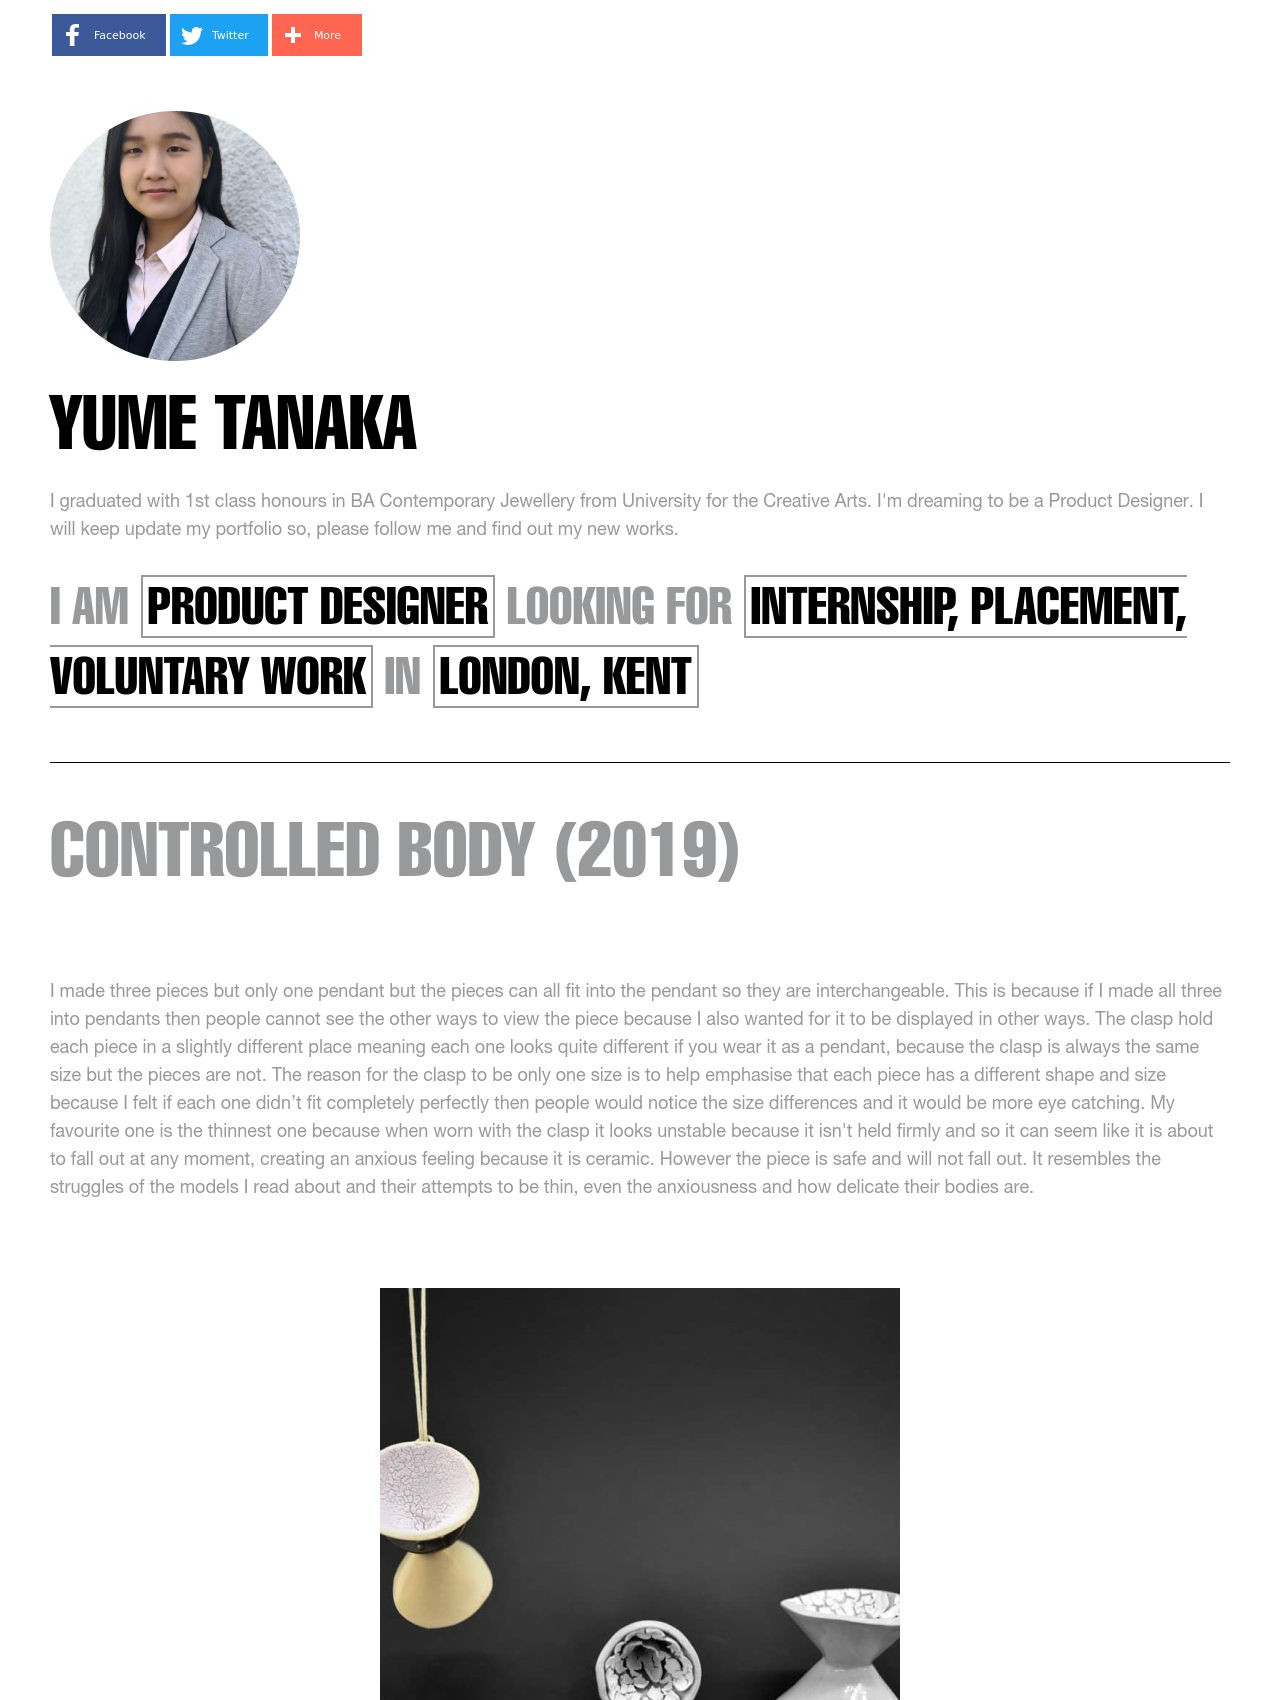 Yume Tanaka